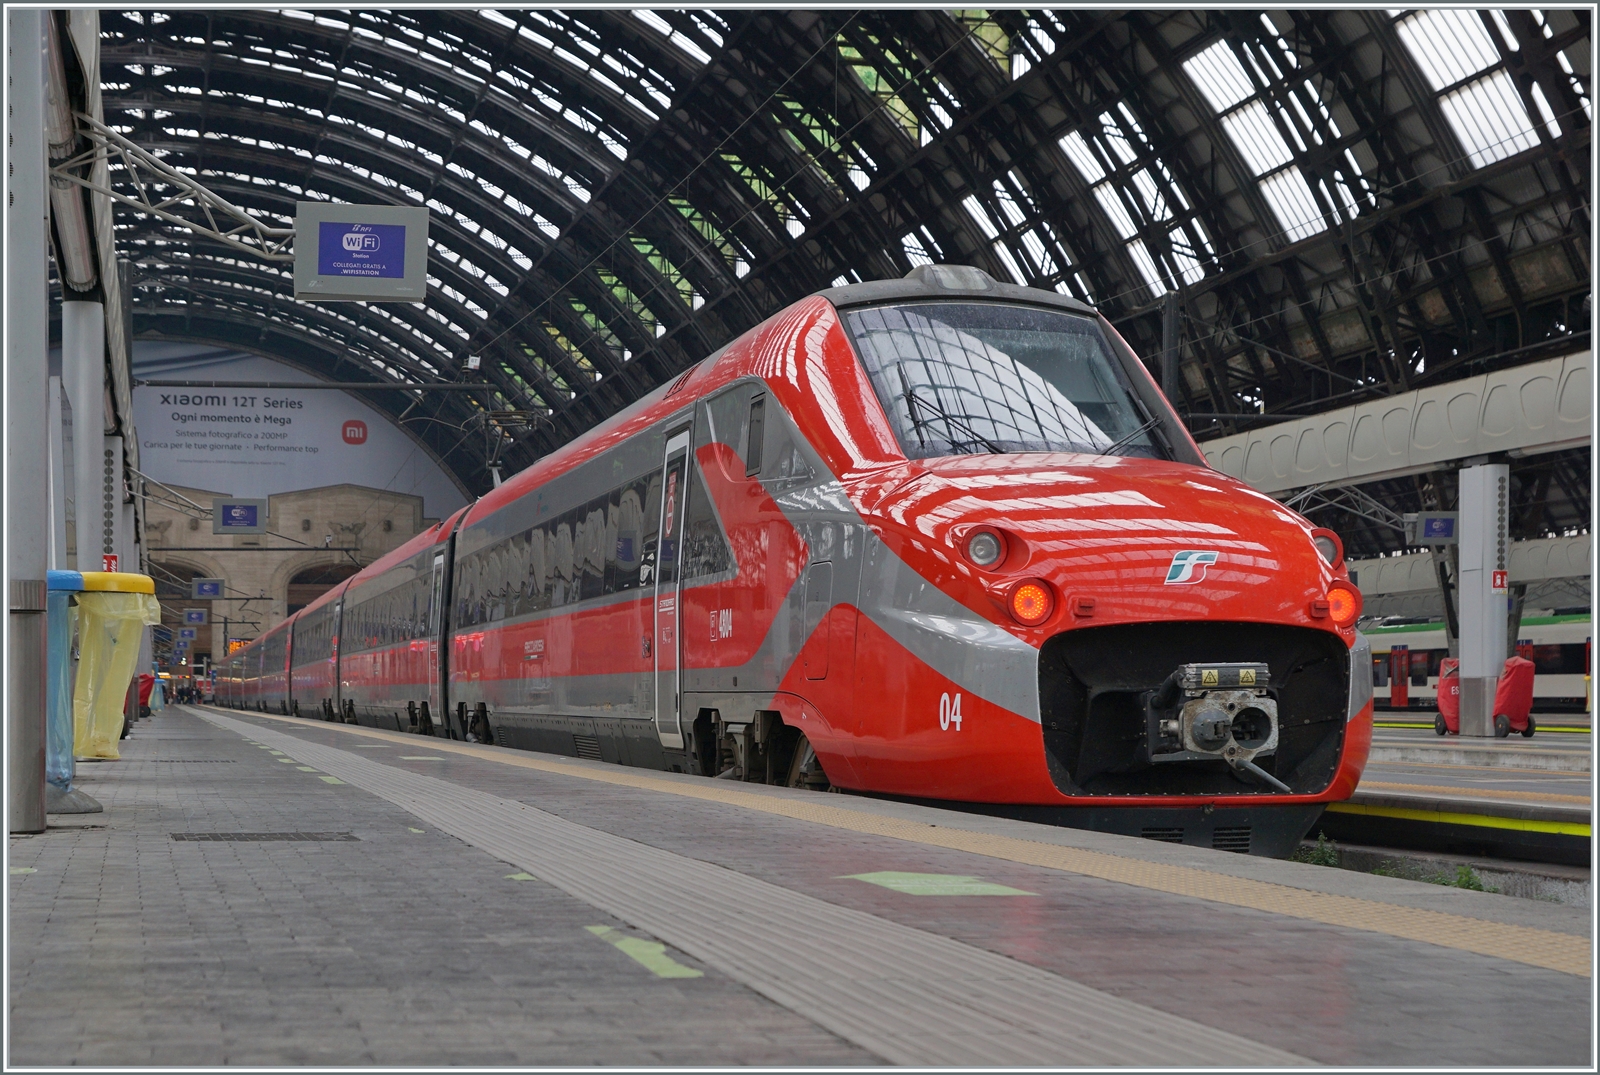 Mit dem FS Trenitalia ETR 700 004 zeigte sich ein weiterer ex FYRA in seiner passenden Frecciarossa Lackierung in Milano Centrale. 

8. November 2022